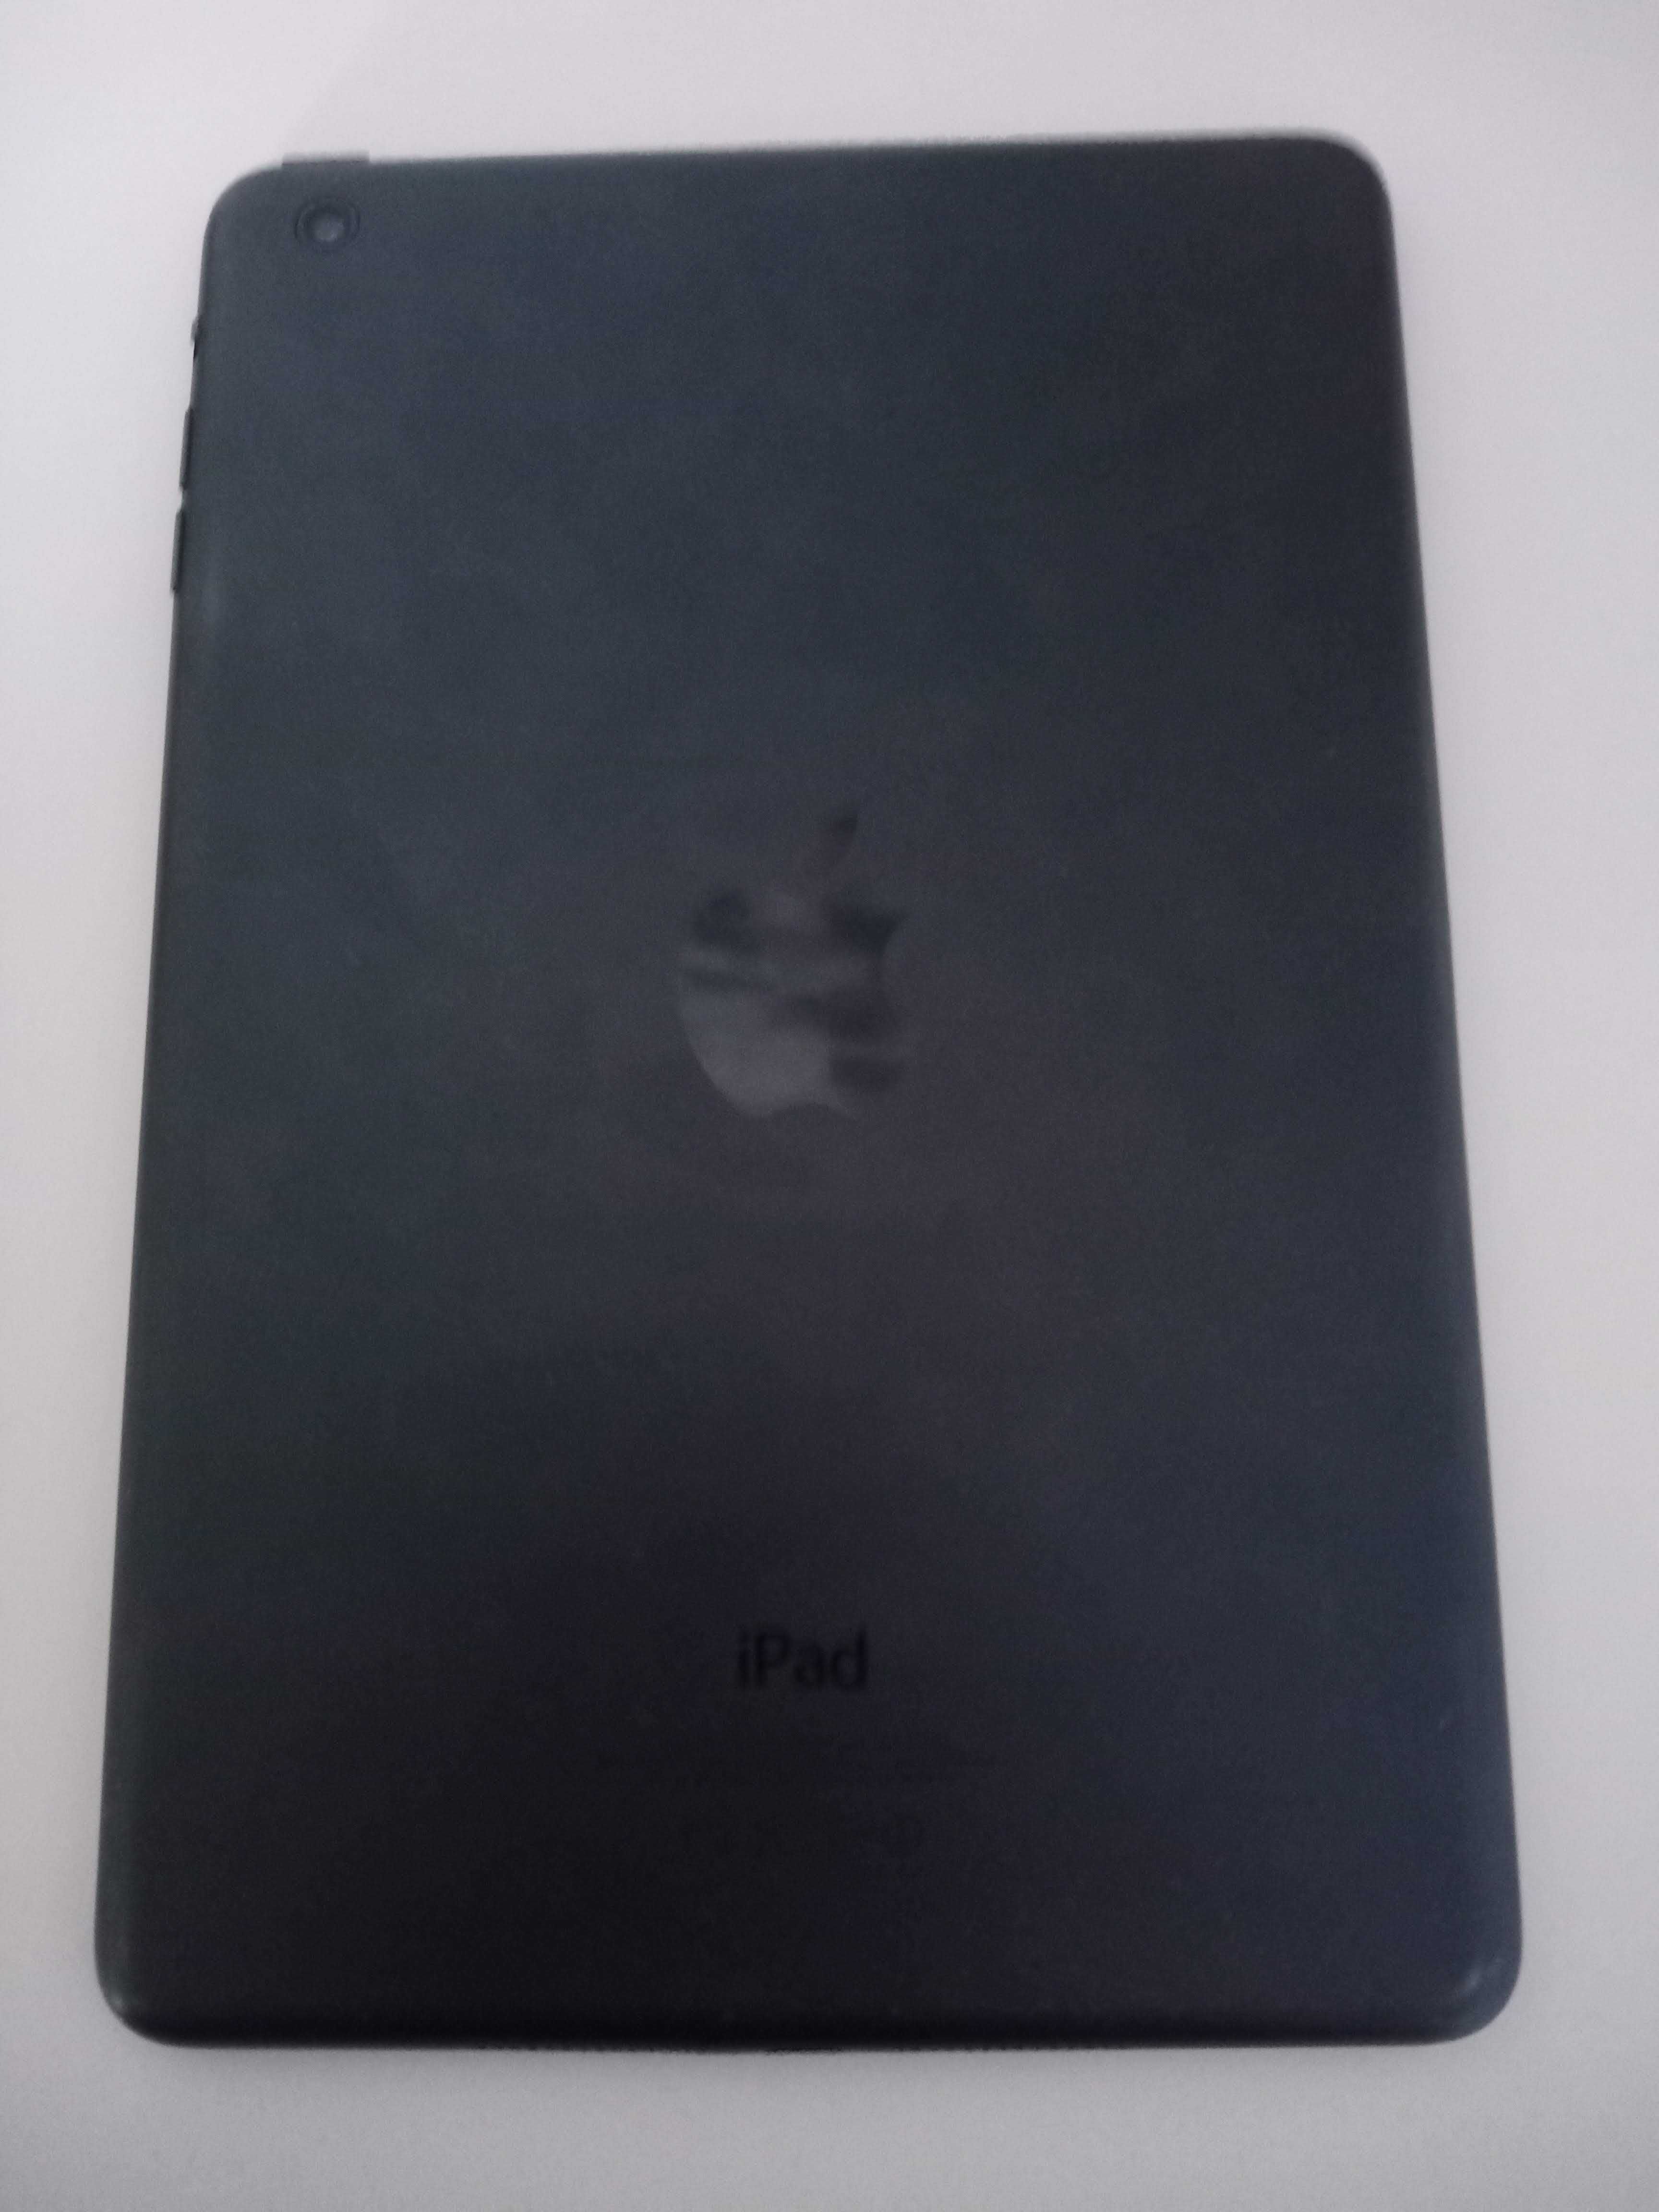 Apple iPad mini 32GB (A1432)